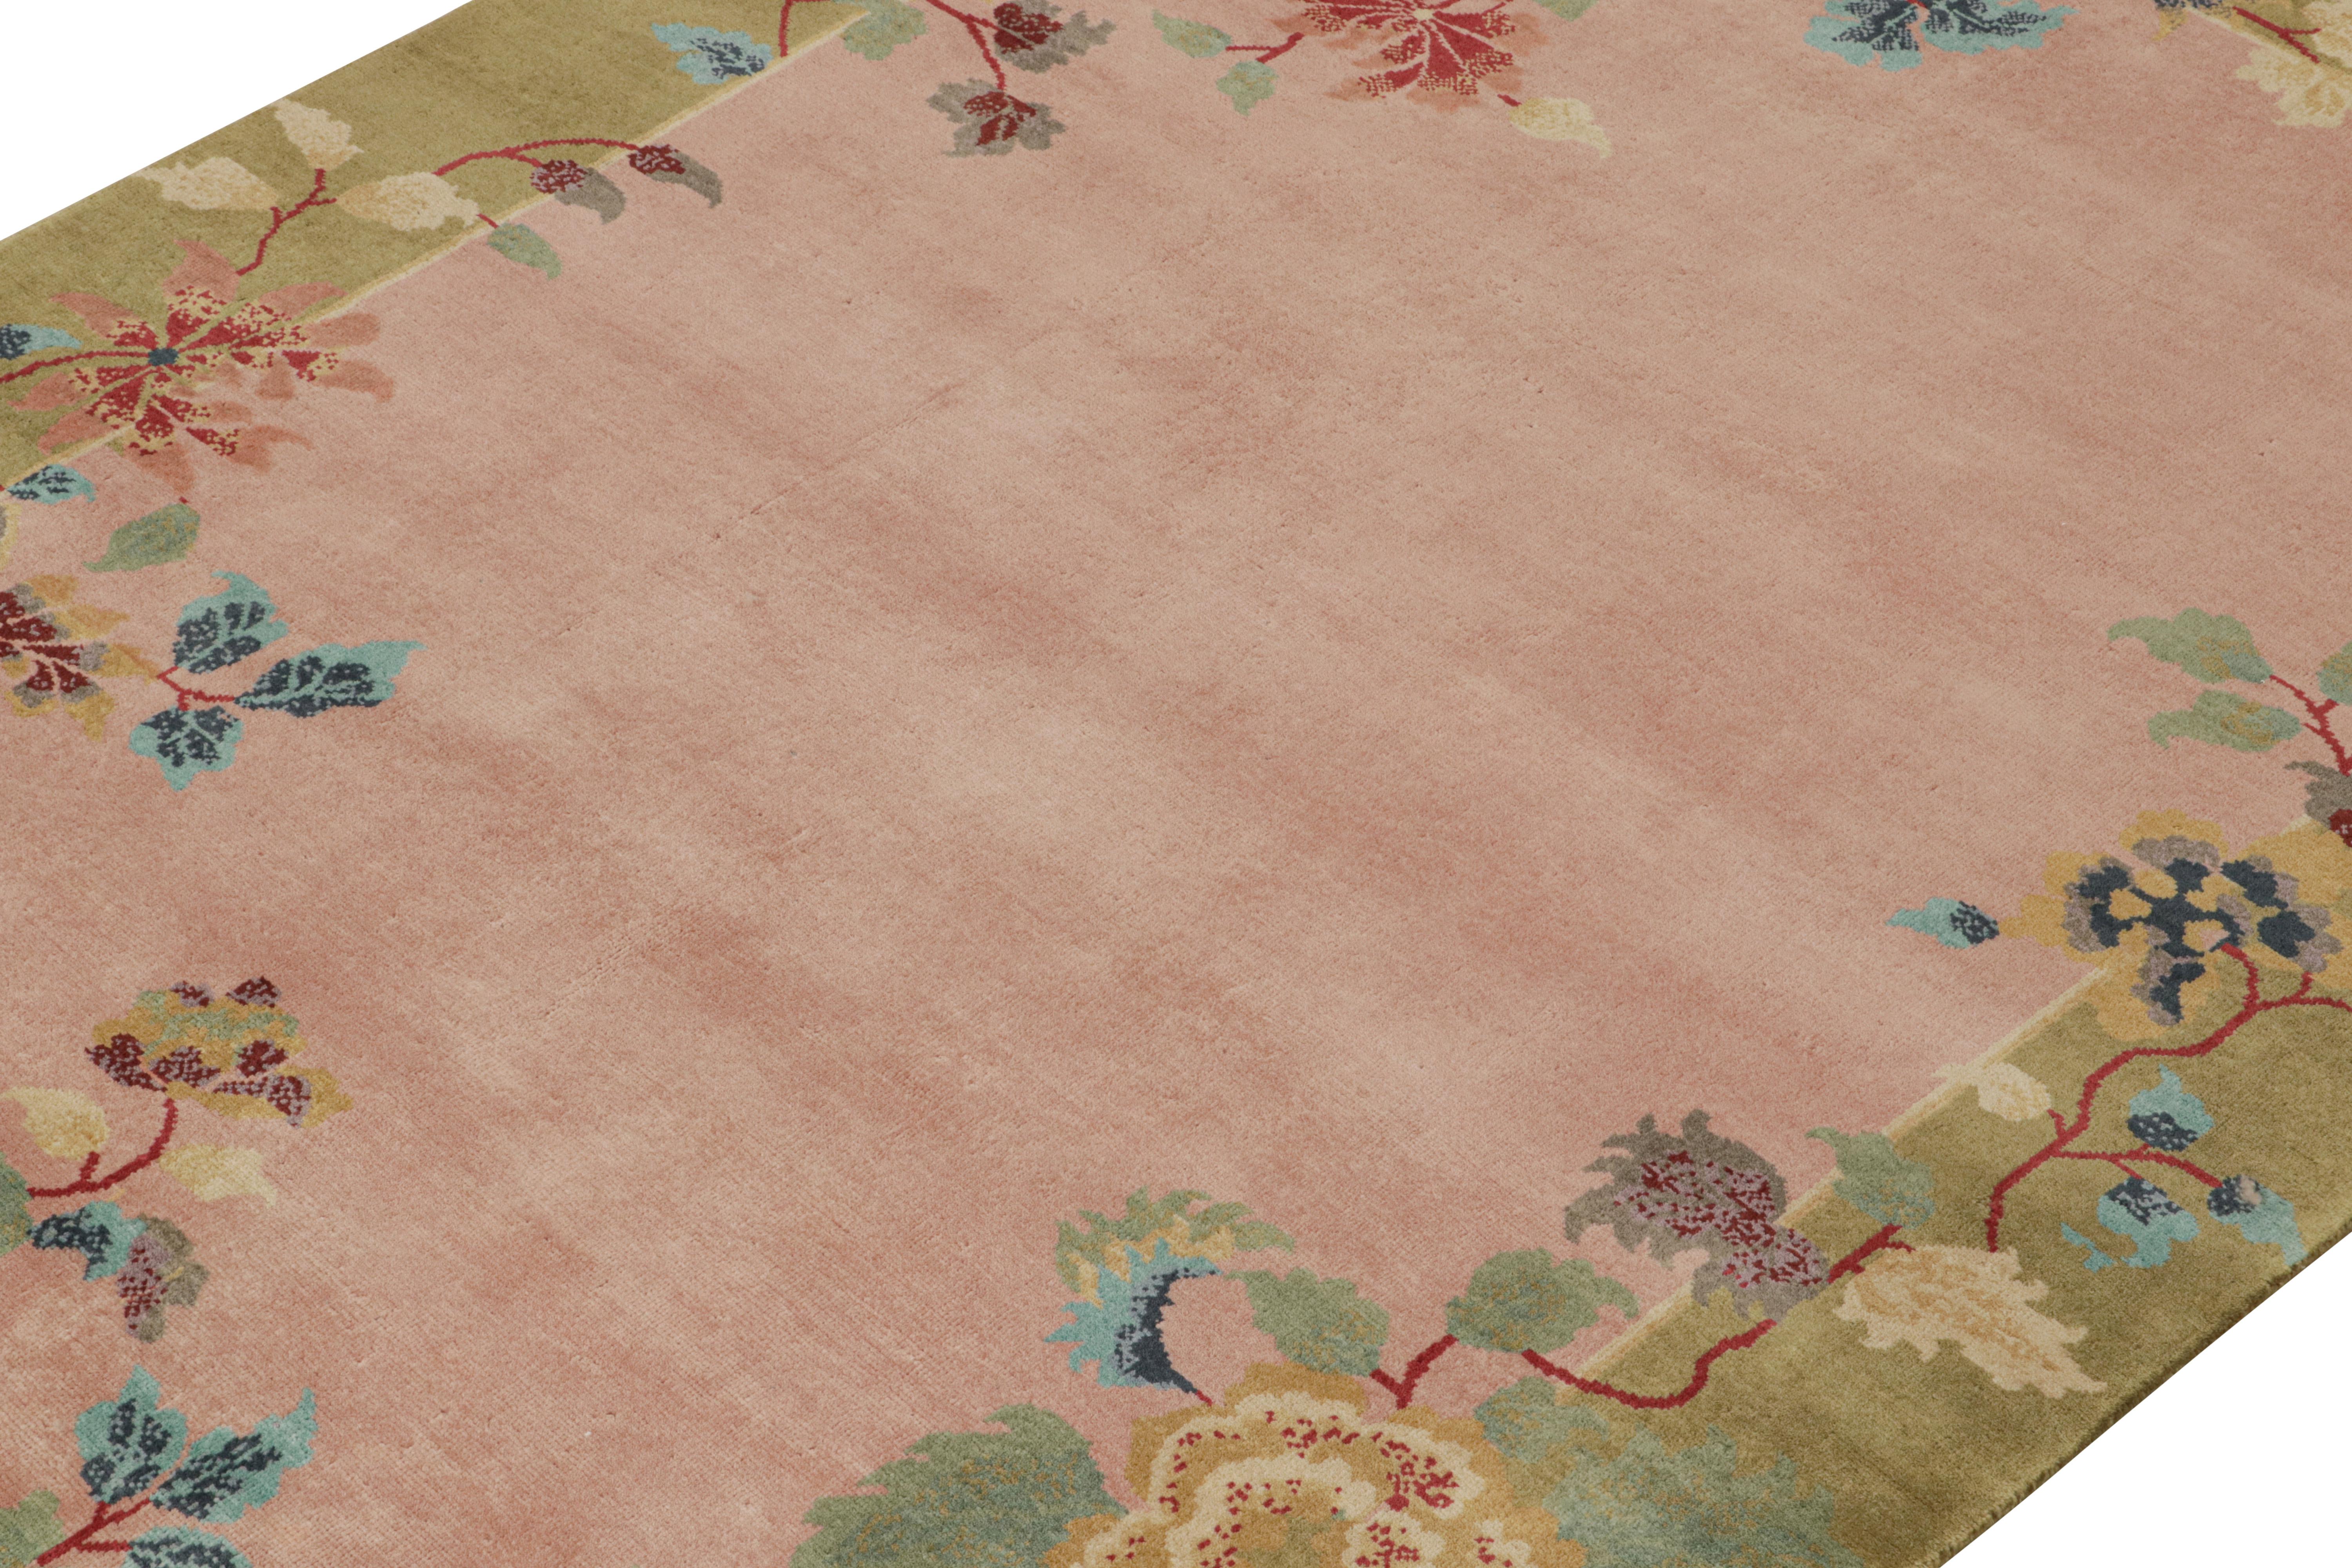 Dieser 6x9 große Teppich ist eine Ode an das chinesische Art-Déco und die nächste Ergänzung der neu inspirierten Deco Collection'S von Rug & Kilim. Handgeknüpft aus Wolle.

Weiter zum Design: 

Dieses Stück greift den minimalistischen Deco-Stil der